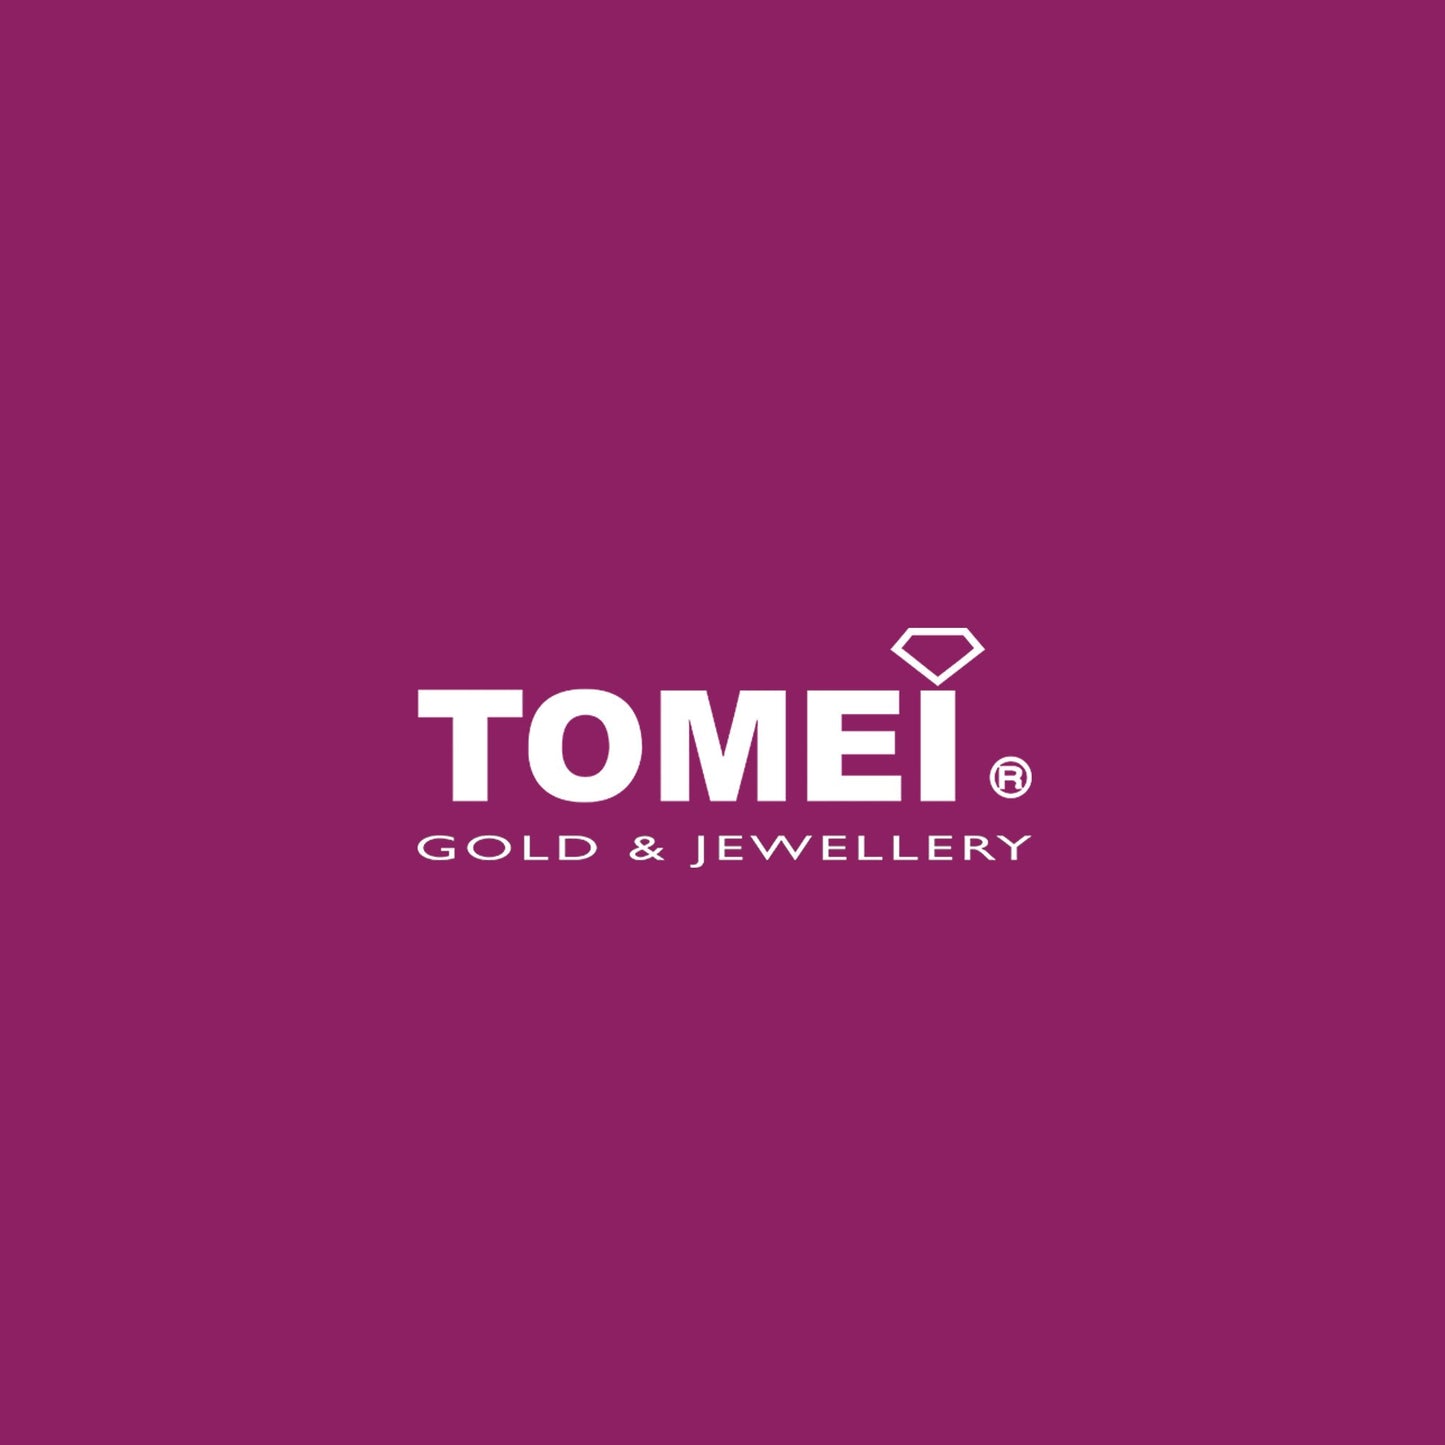 TOMEI Heart Loop Earrings, White Gold 585